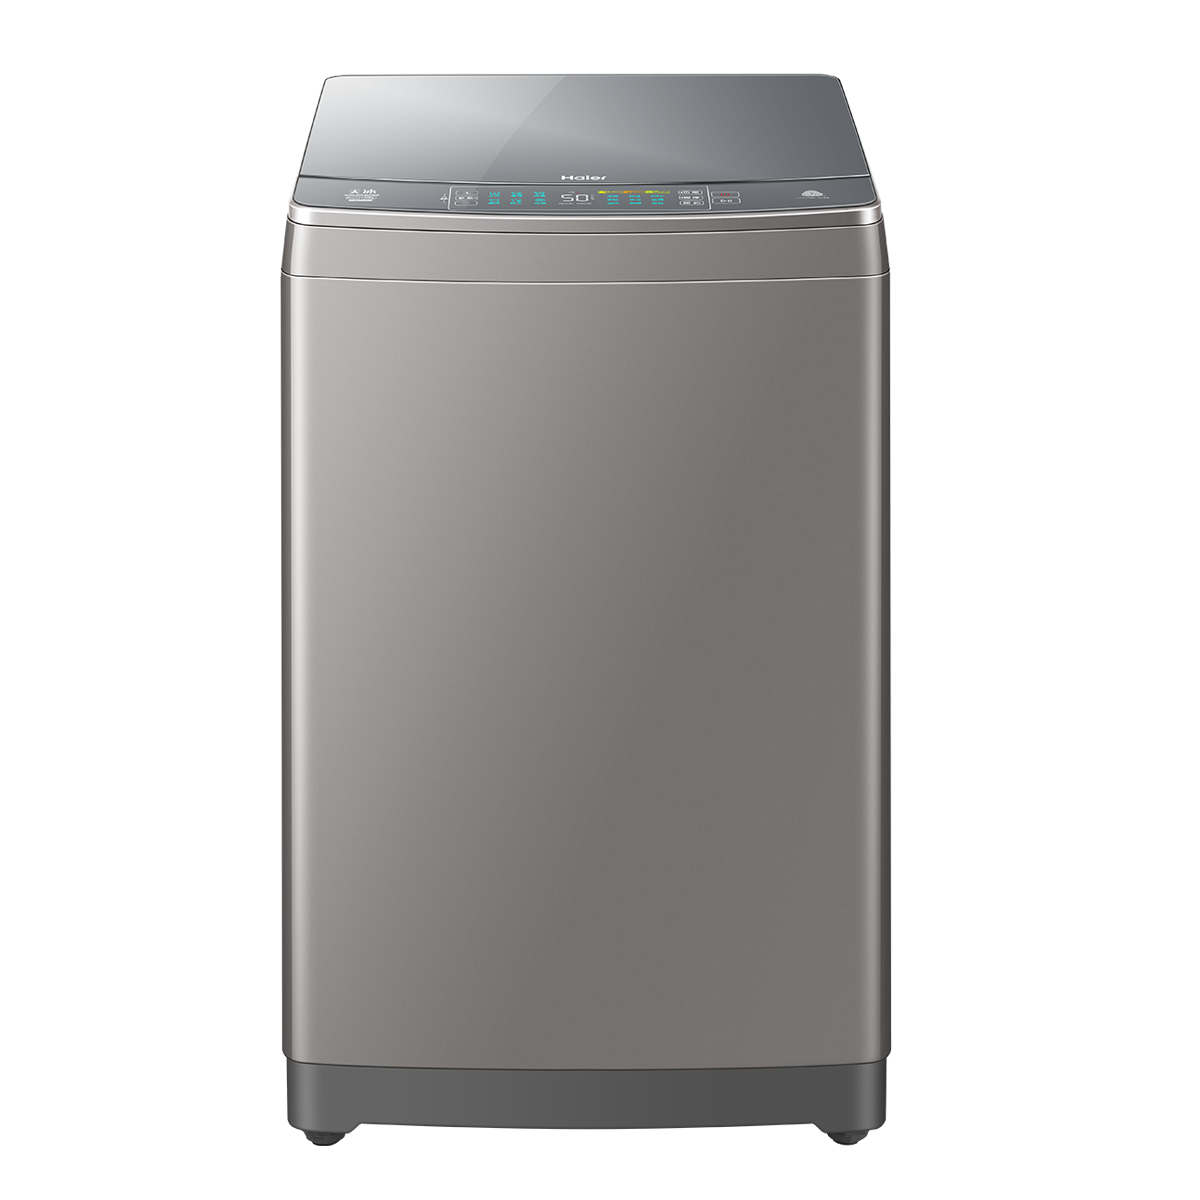 海尔Haier洗衣机 XQS100-BZ866 说明书